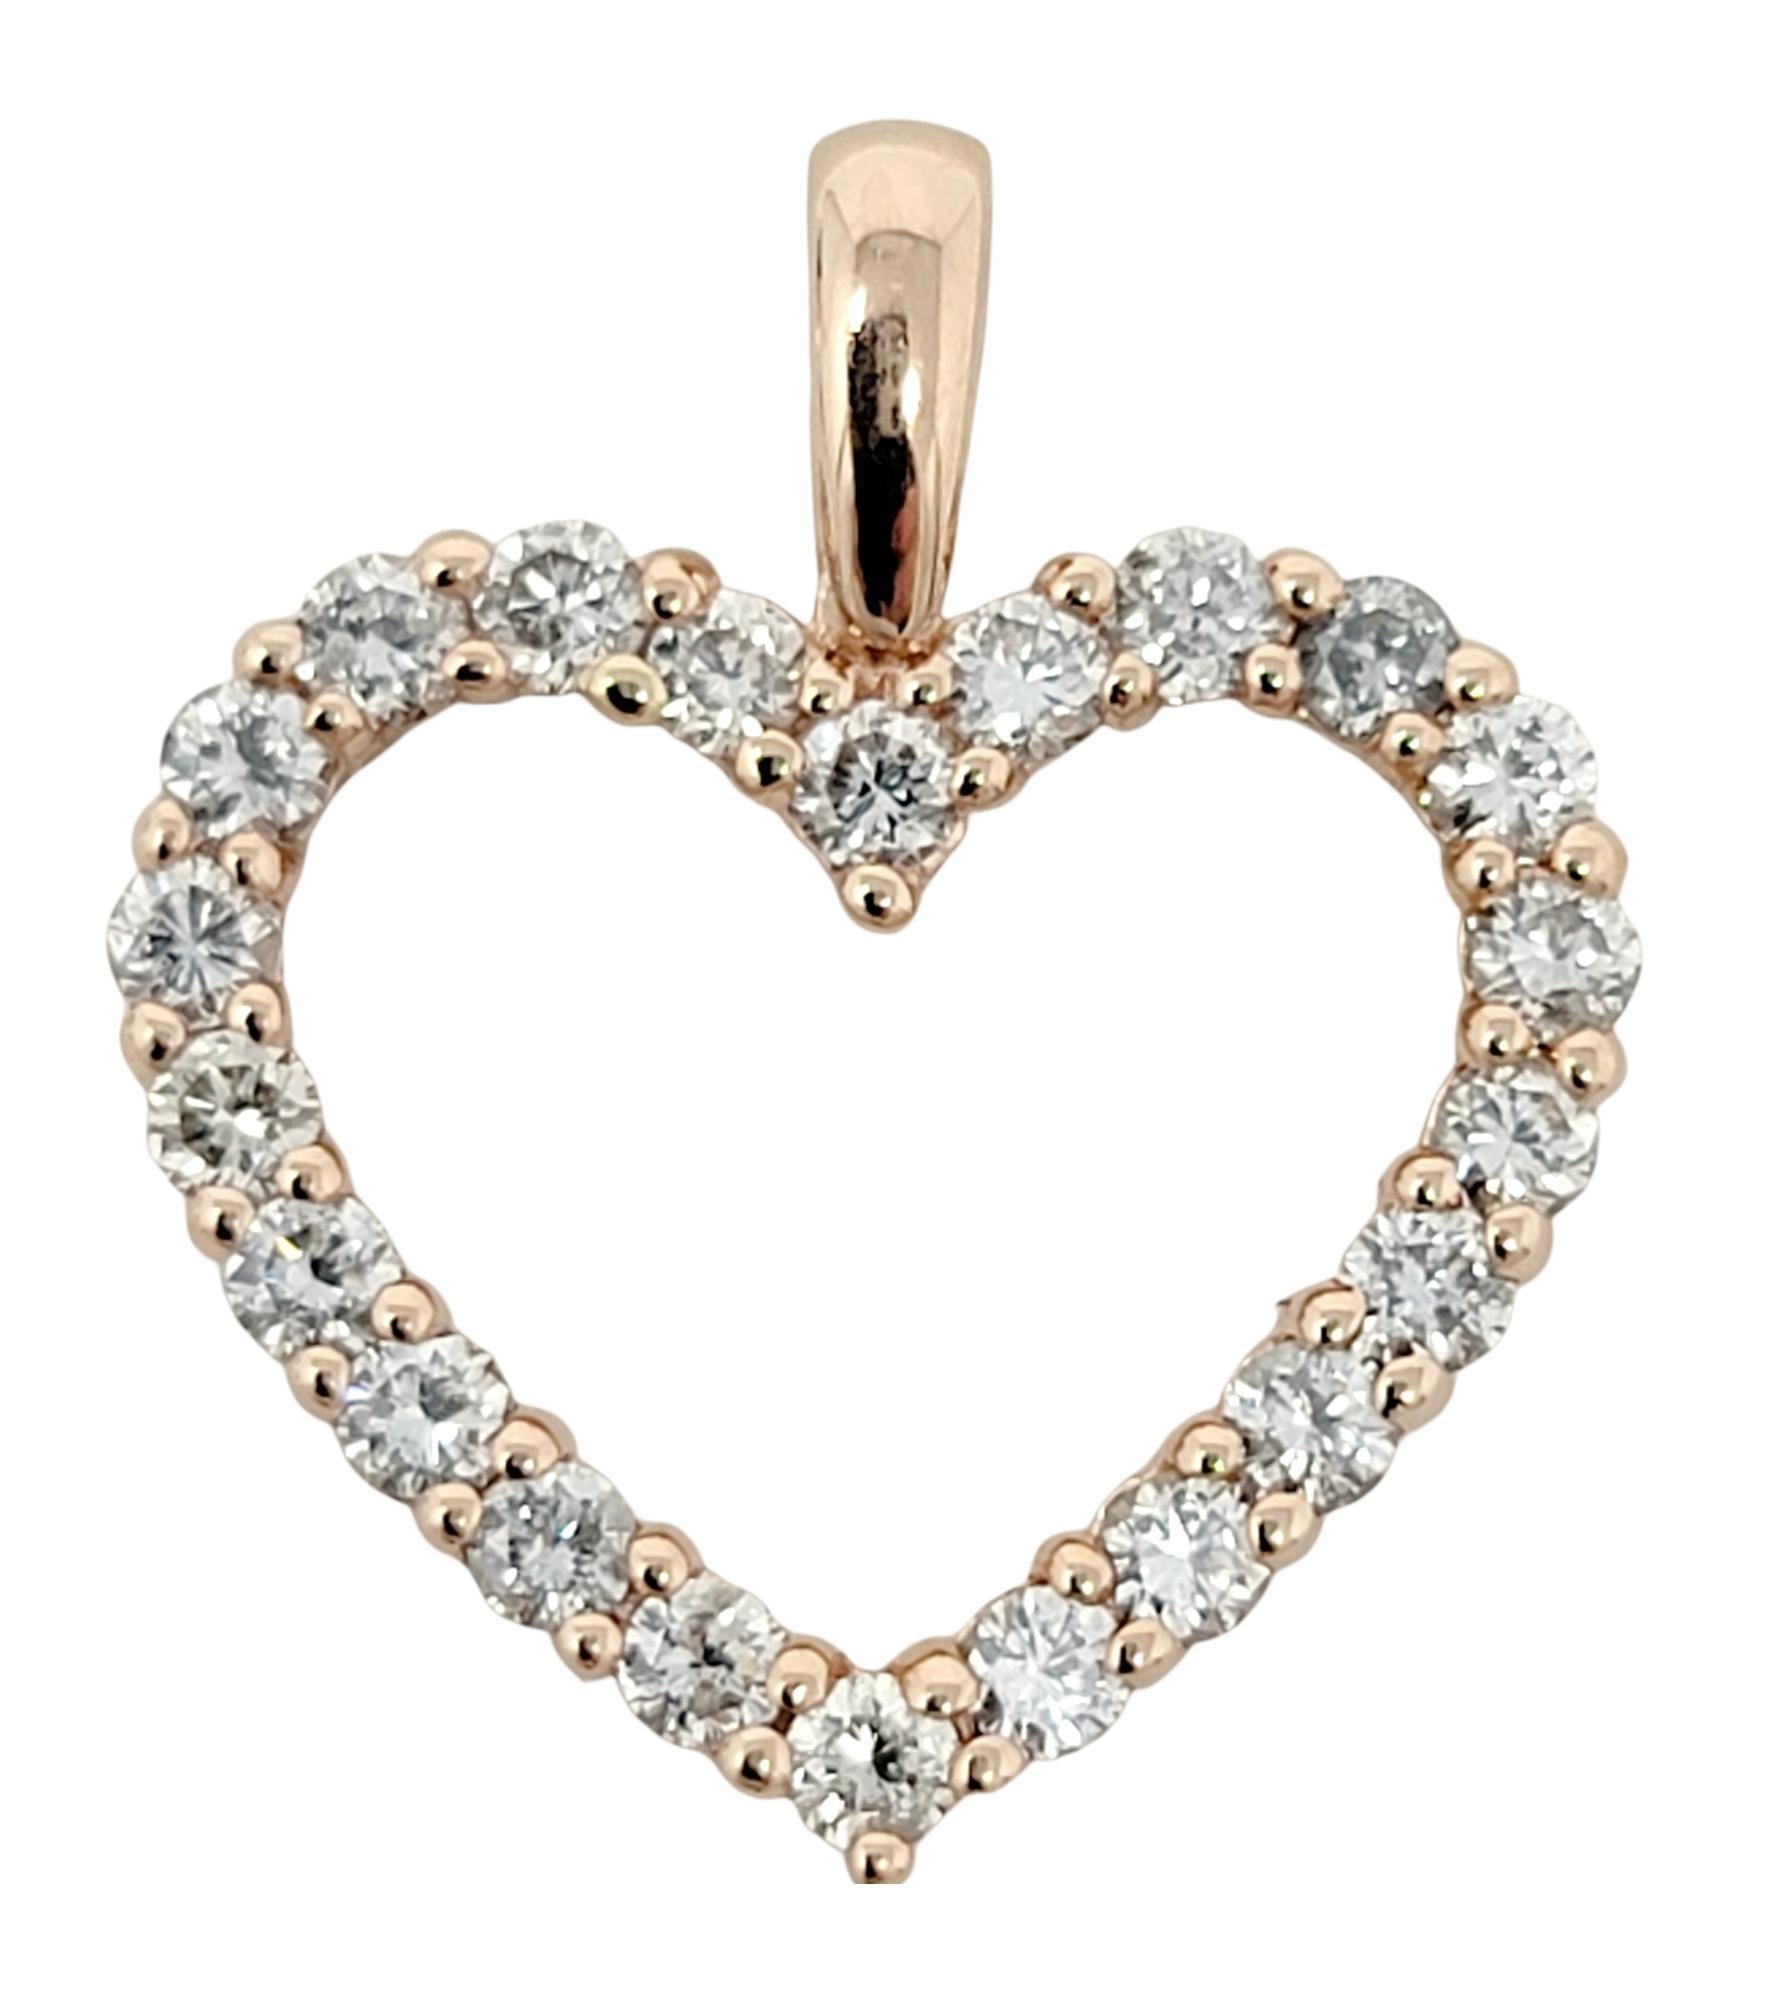 Délicat mais éblouissant pendentif à cœur ouvert en diamant en or rose 14 carats. 

*Cette liste est pour le pendentif seulement, aucun collier n'est inclus. 

Type d'article : Pendentif
Métal : Or rose 14K
Poids : 2,10 grammes
Coupes de diamants :